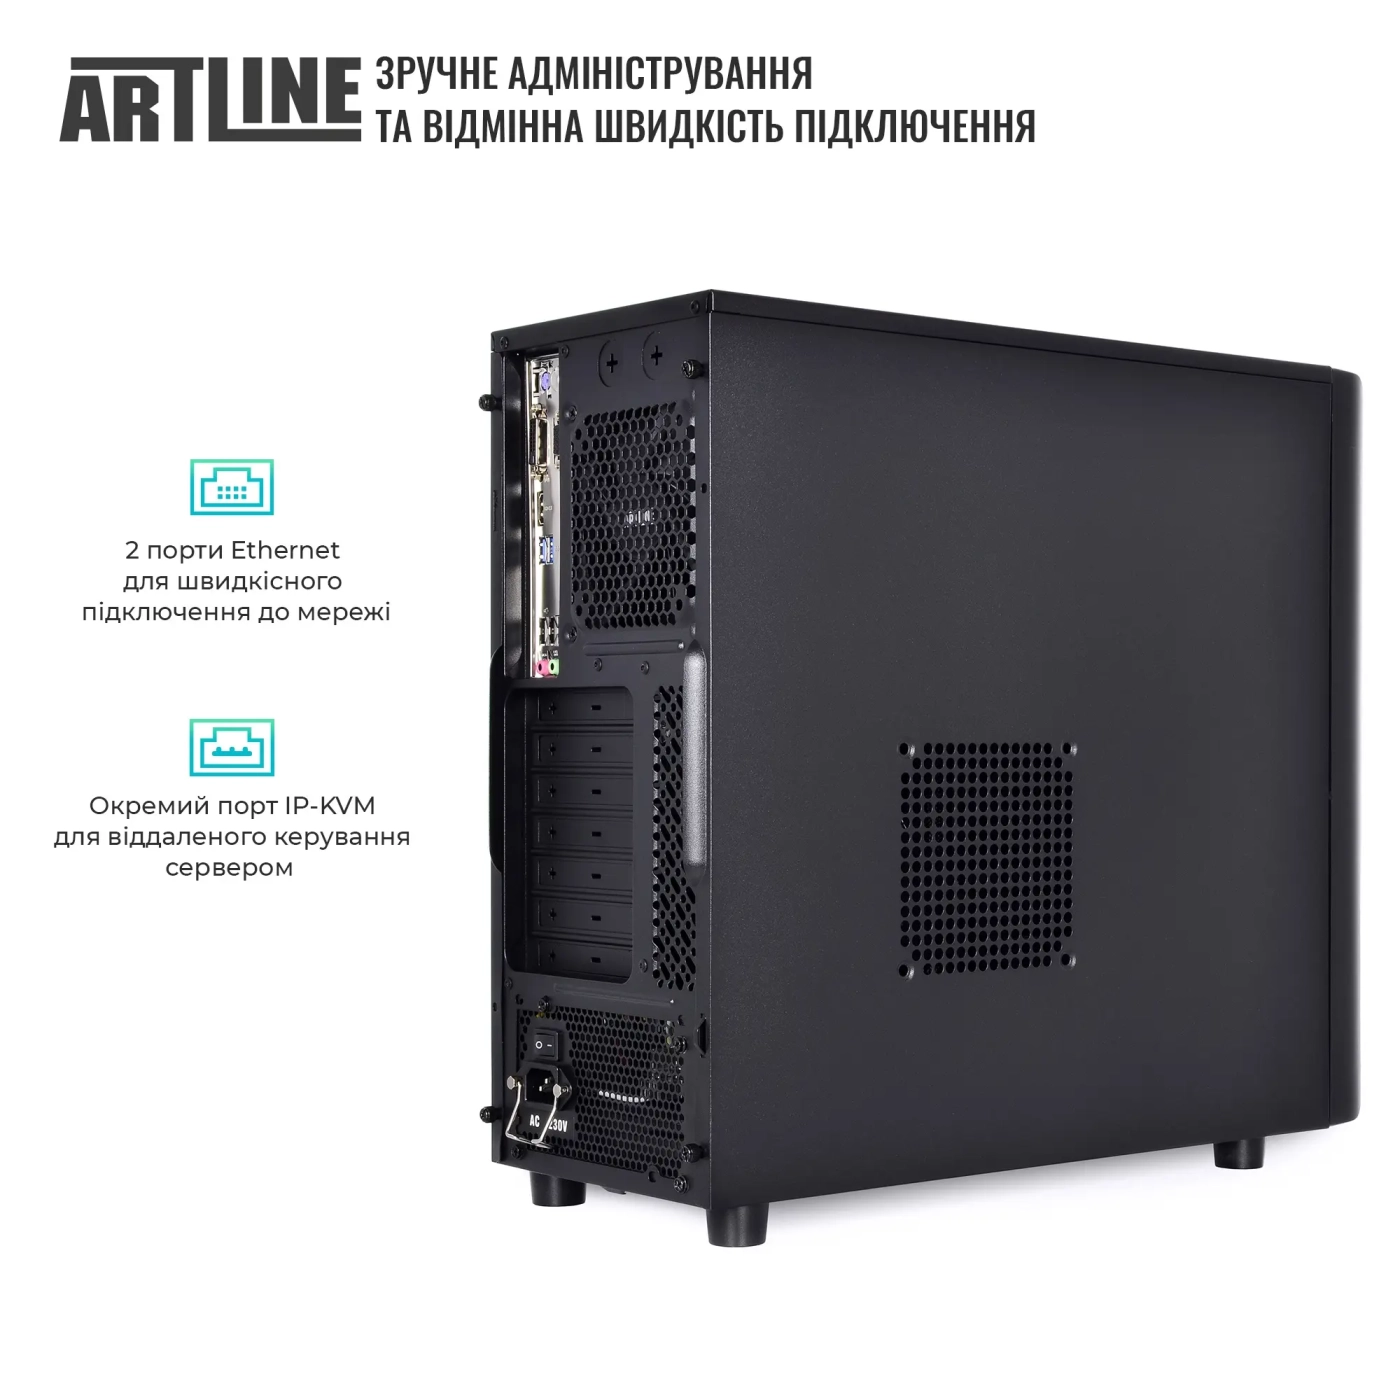 Купить Сервер ARTLINE Business T36 (T36v15) - фото 4